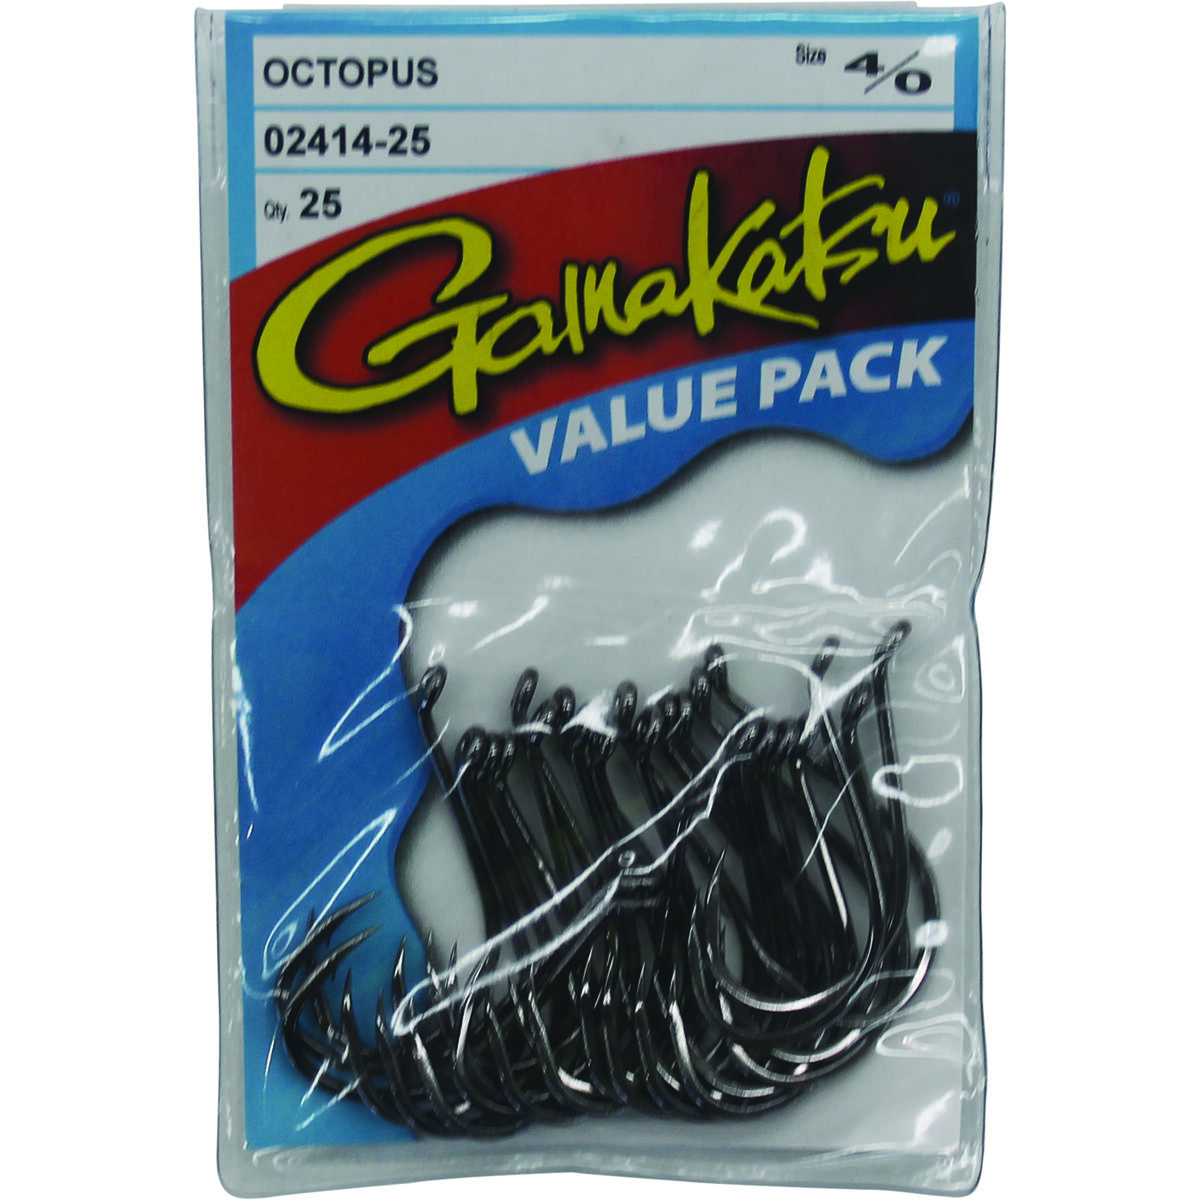 Gamakatsu Octopus Hook blk 4/0